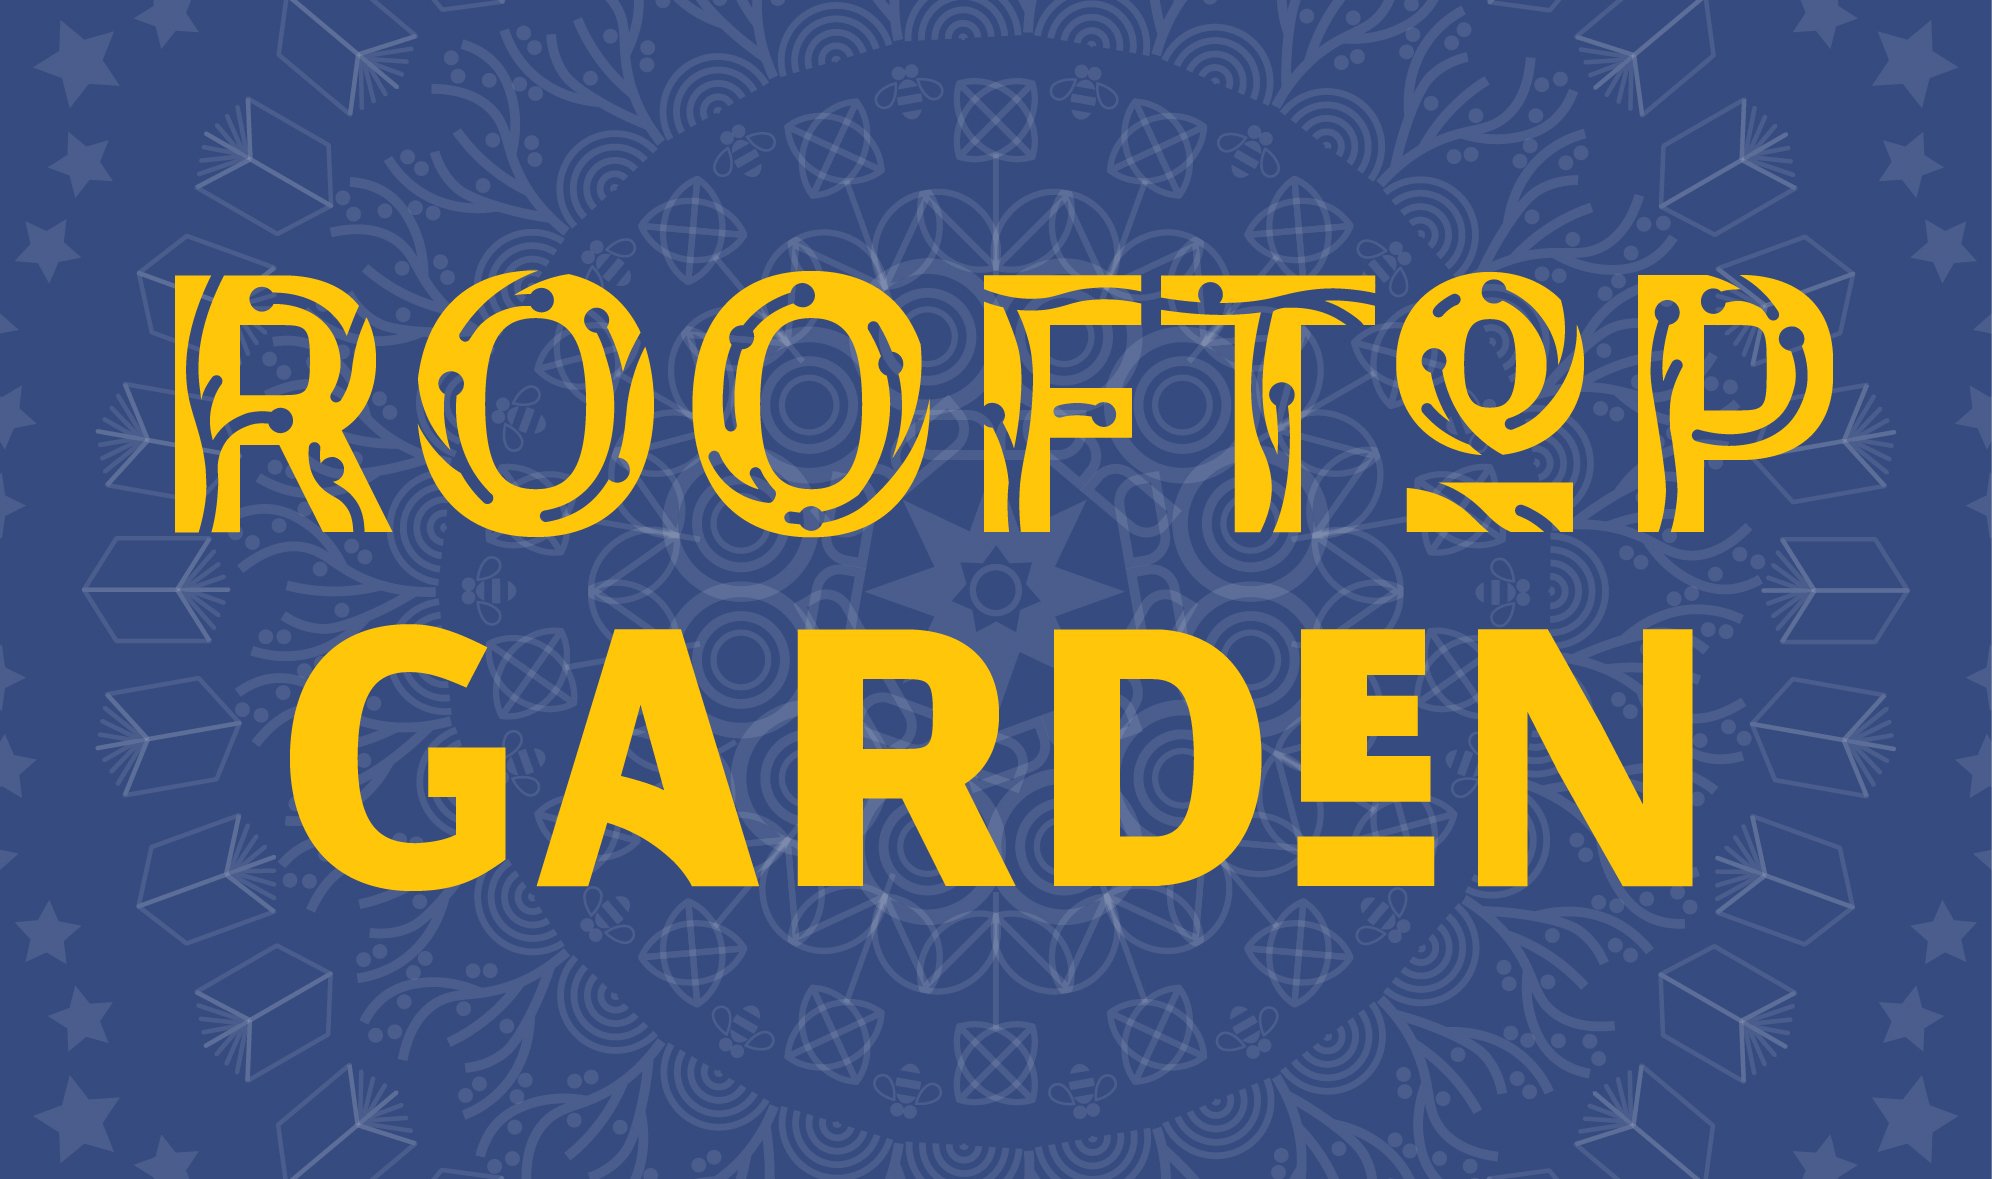 fonts_Rooftop Garden-01.jpg